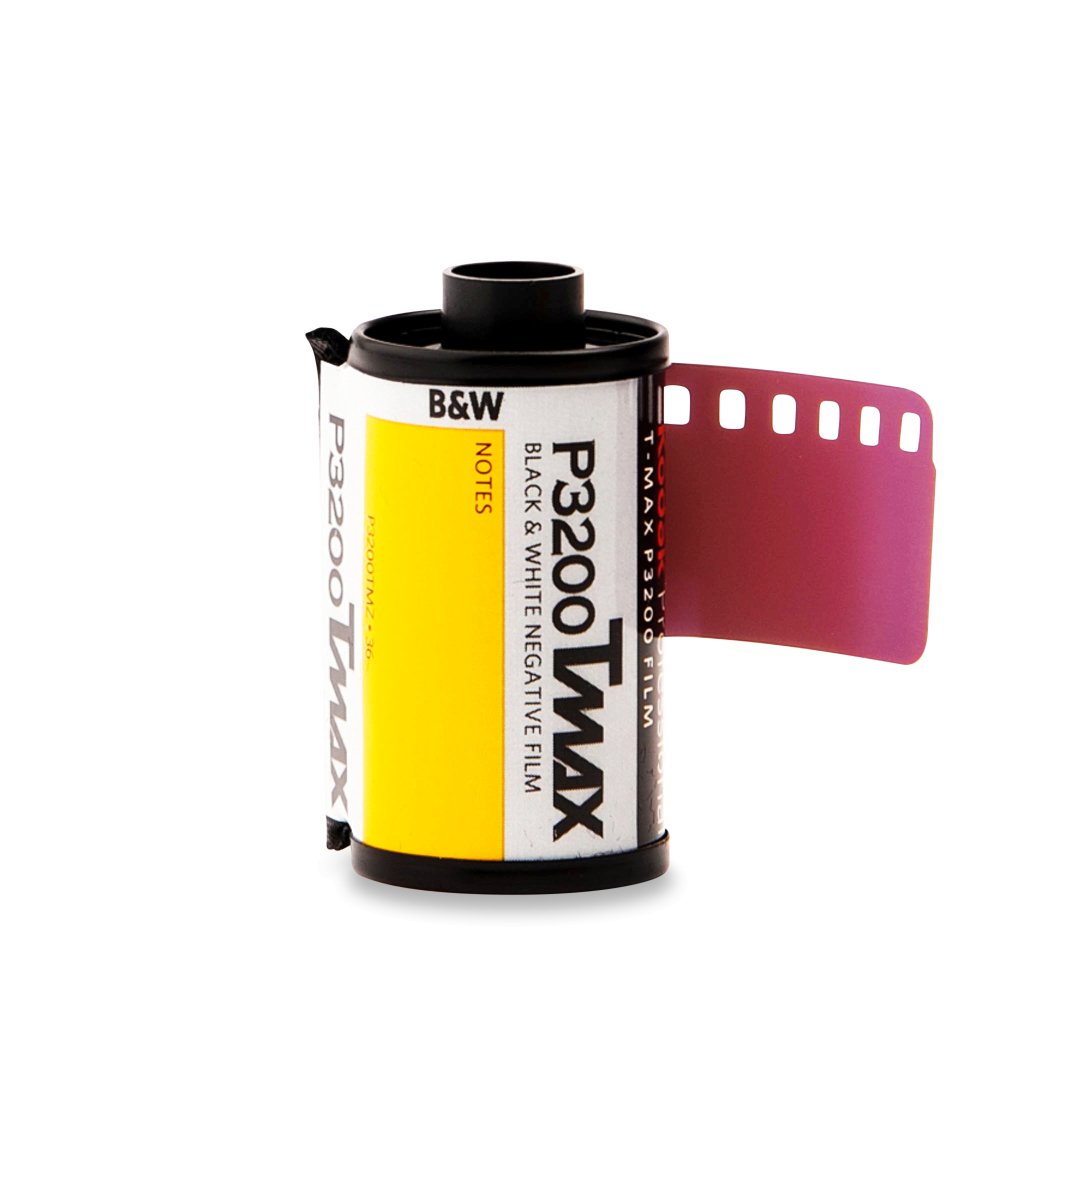 Kodak T-Max P3200 - 35mm - 36 Exposure - Single Roll - Rewind Photo Lab - Kodak